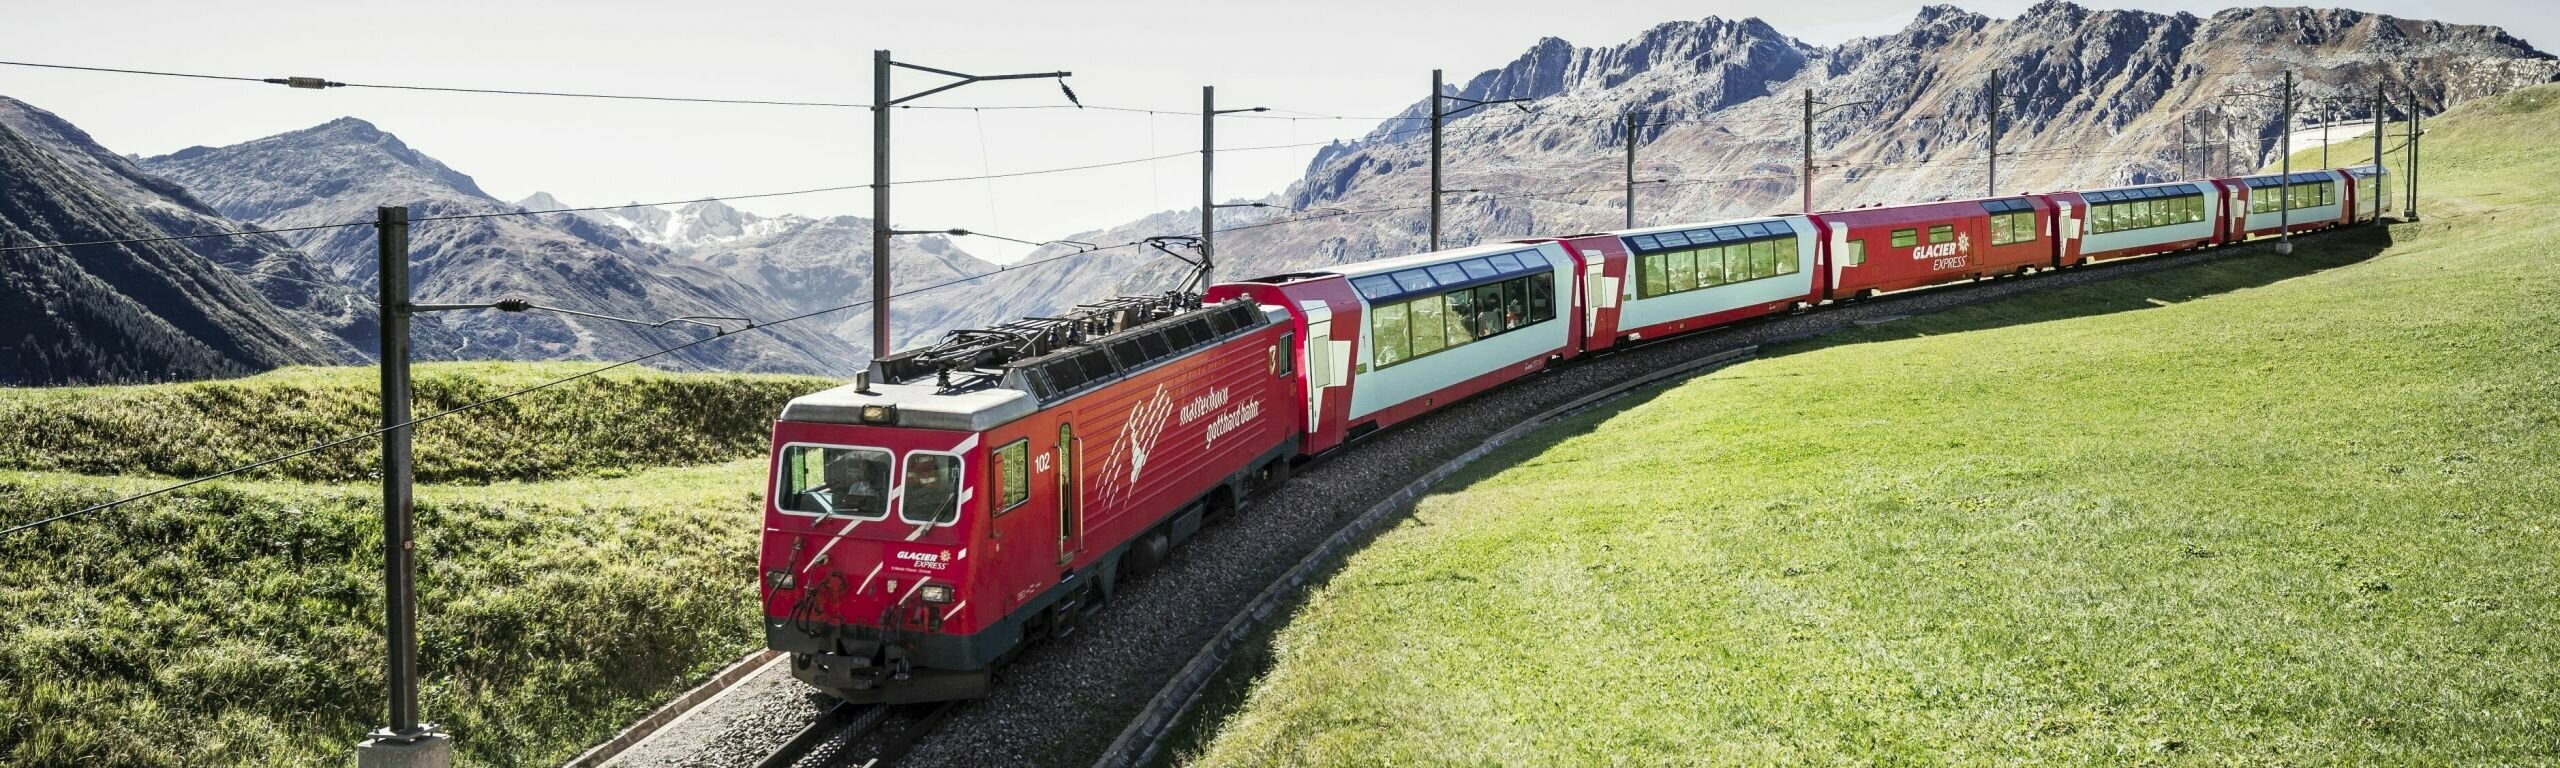 Neuf locomotives du Matterhorn Gotthard Bahn seront rénovées